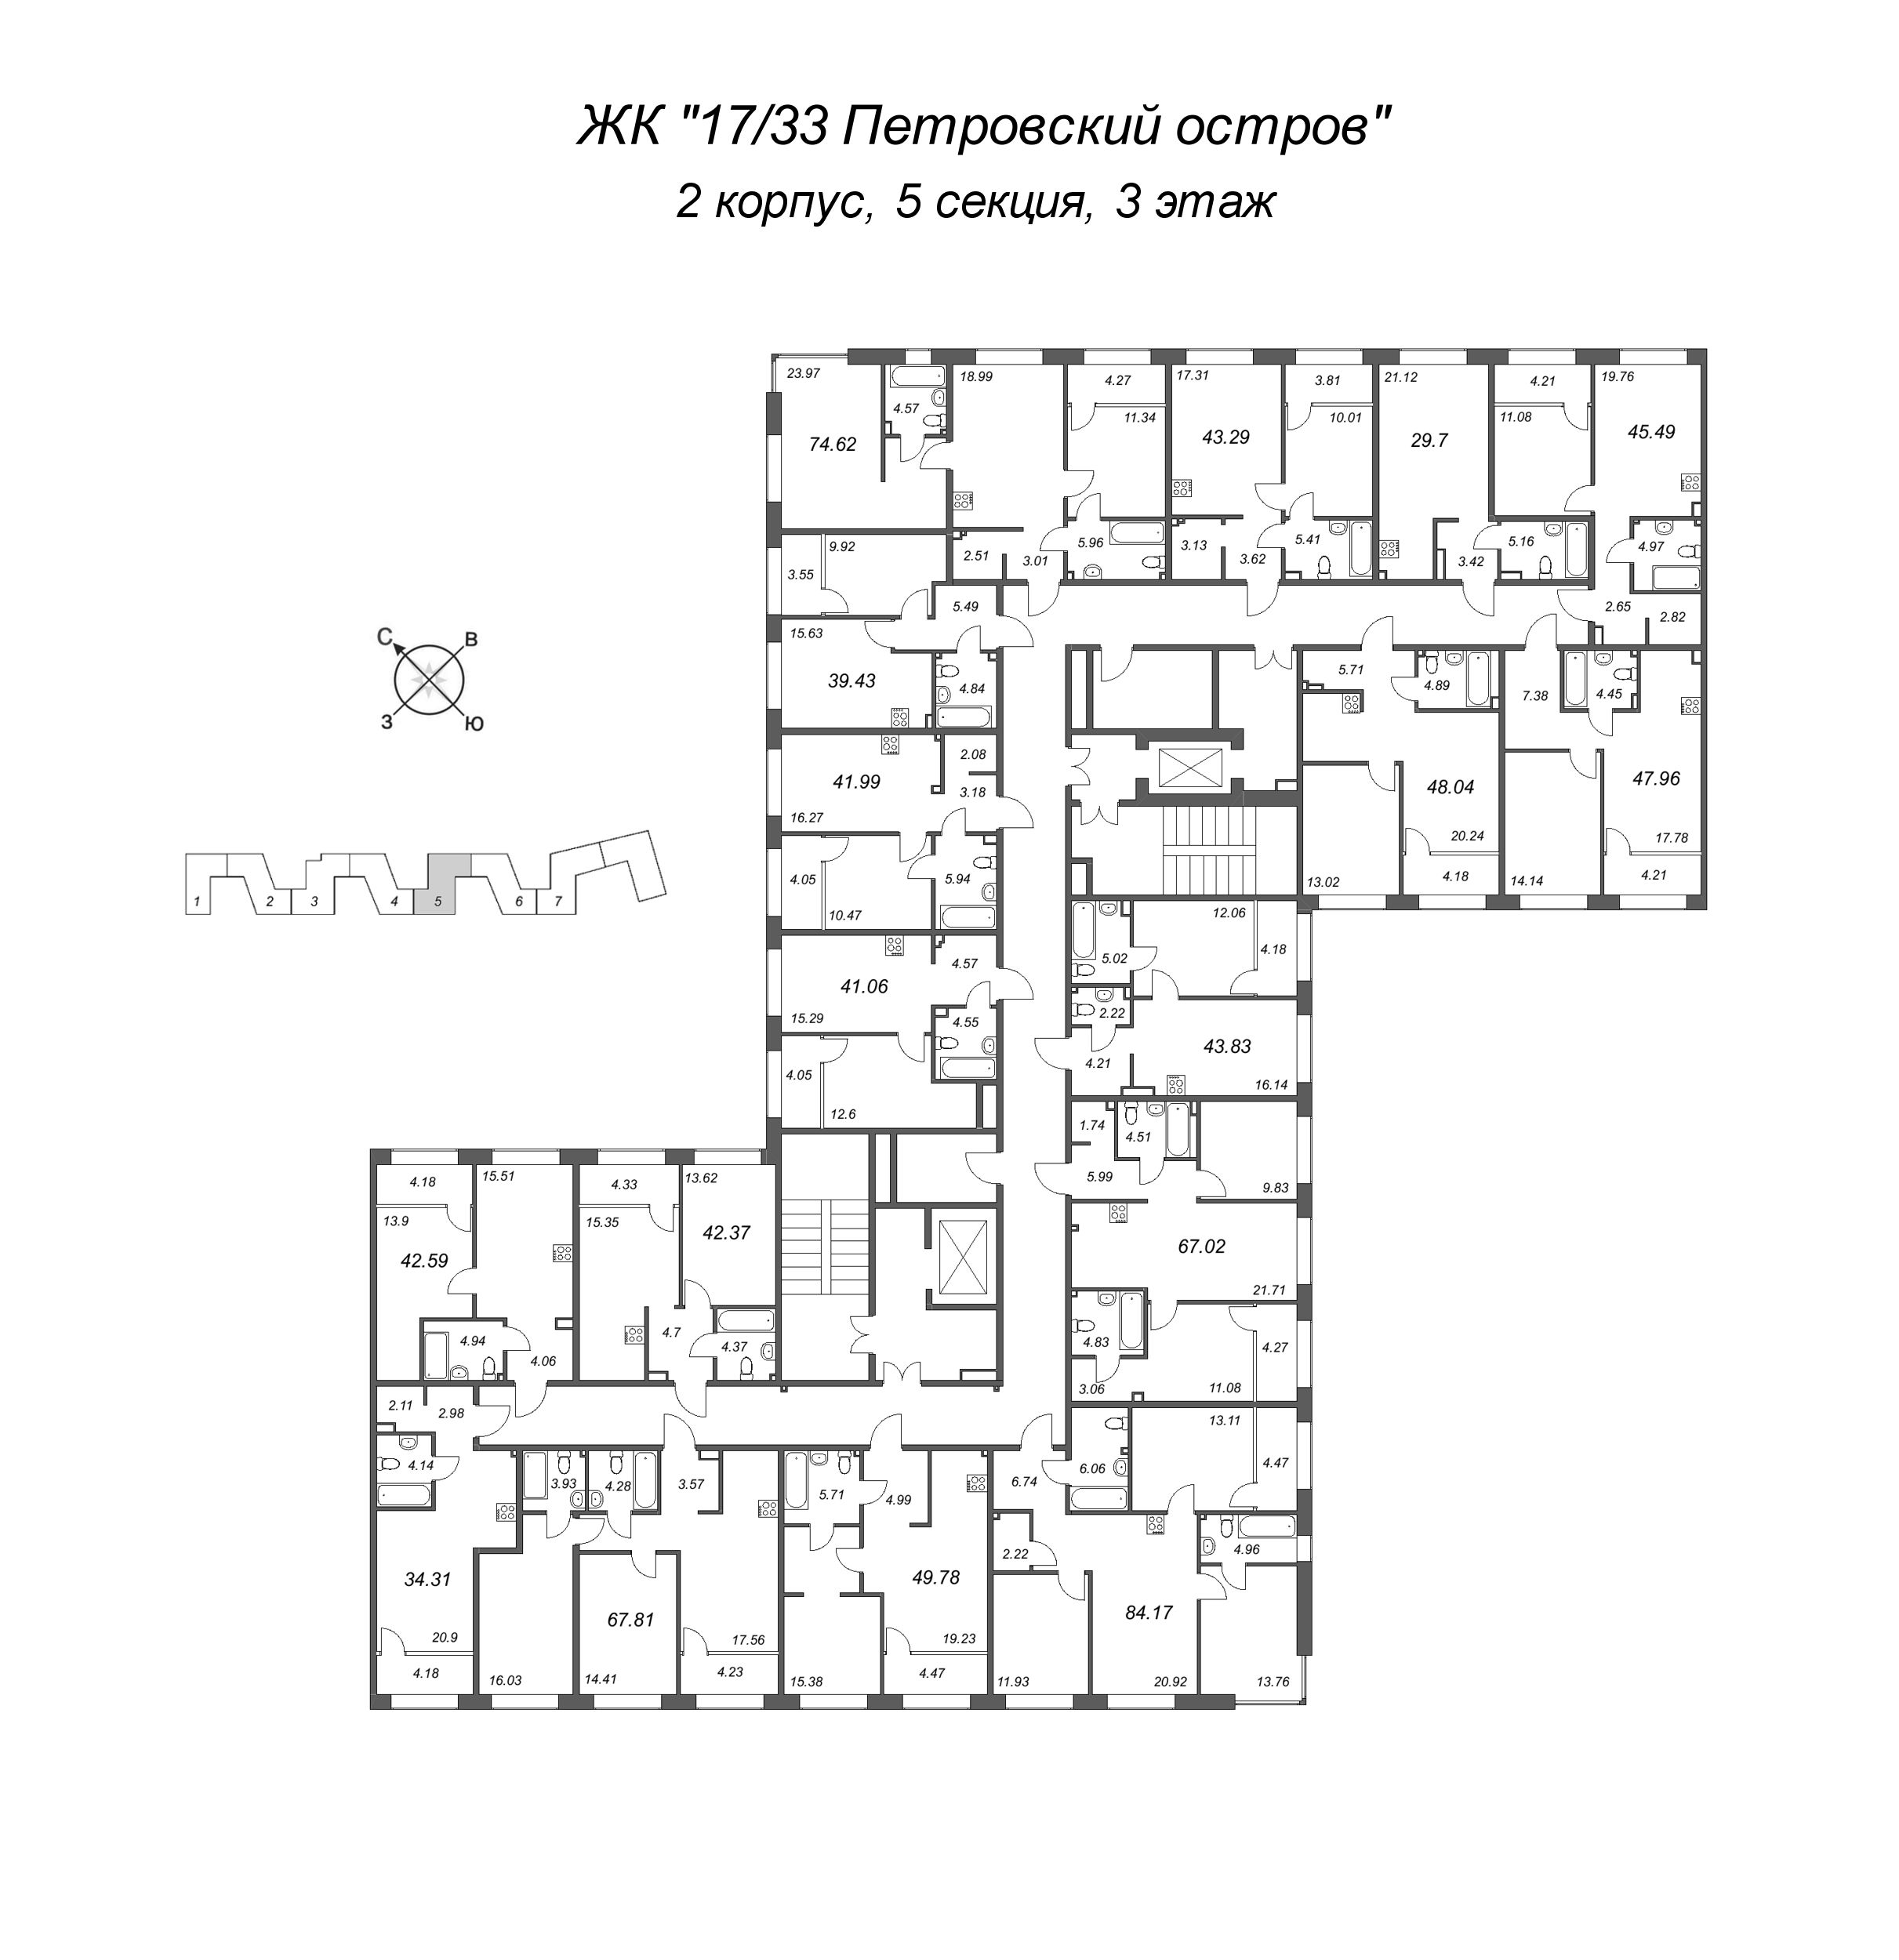 2-комнатная (Евро) квартира, 39.43 м² в ЖК "17/33 Петровский остров" - планировка этажа